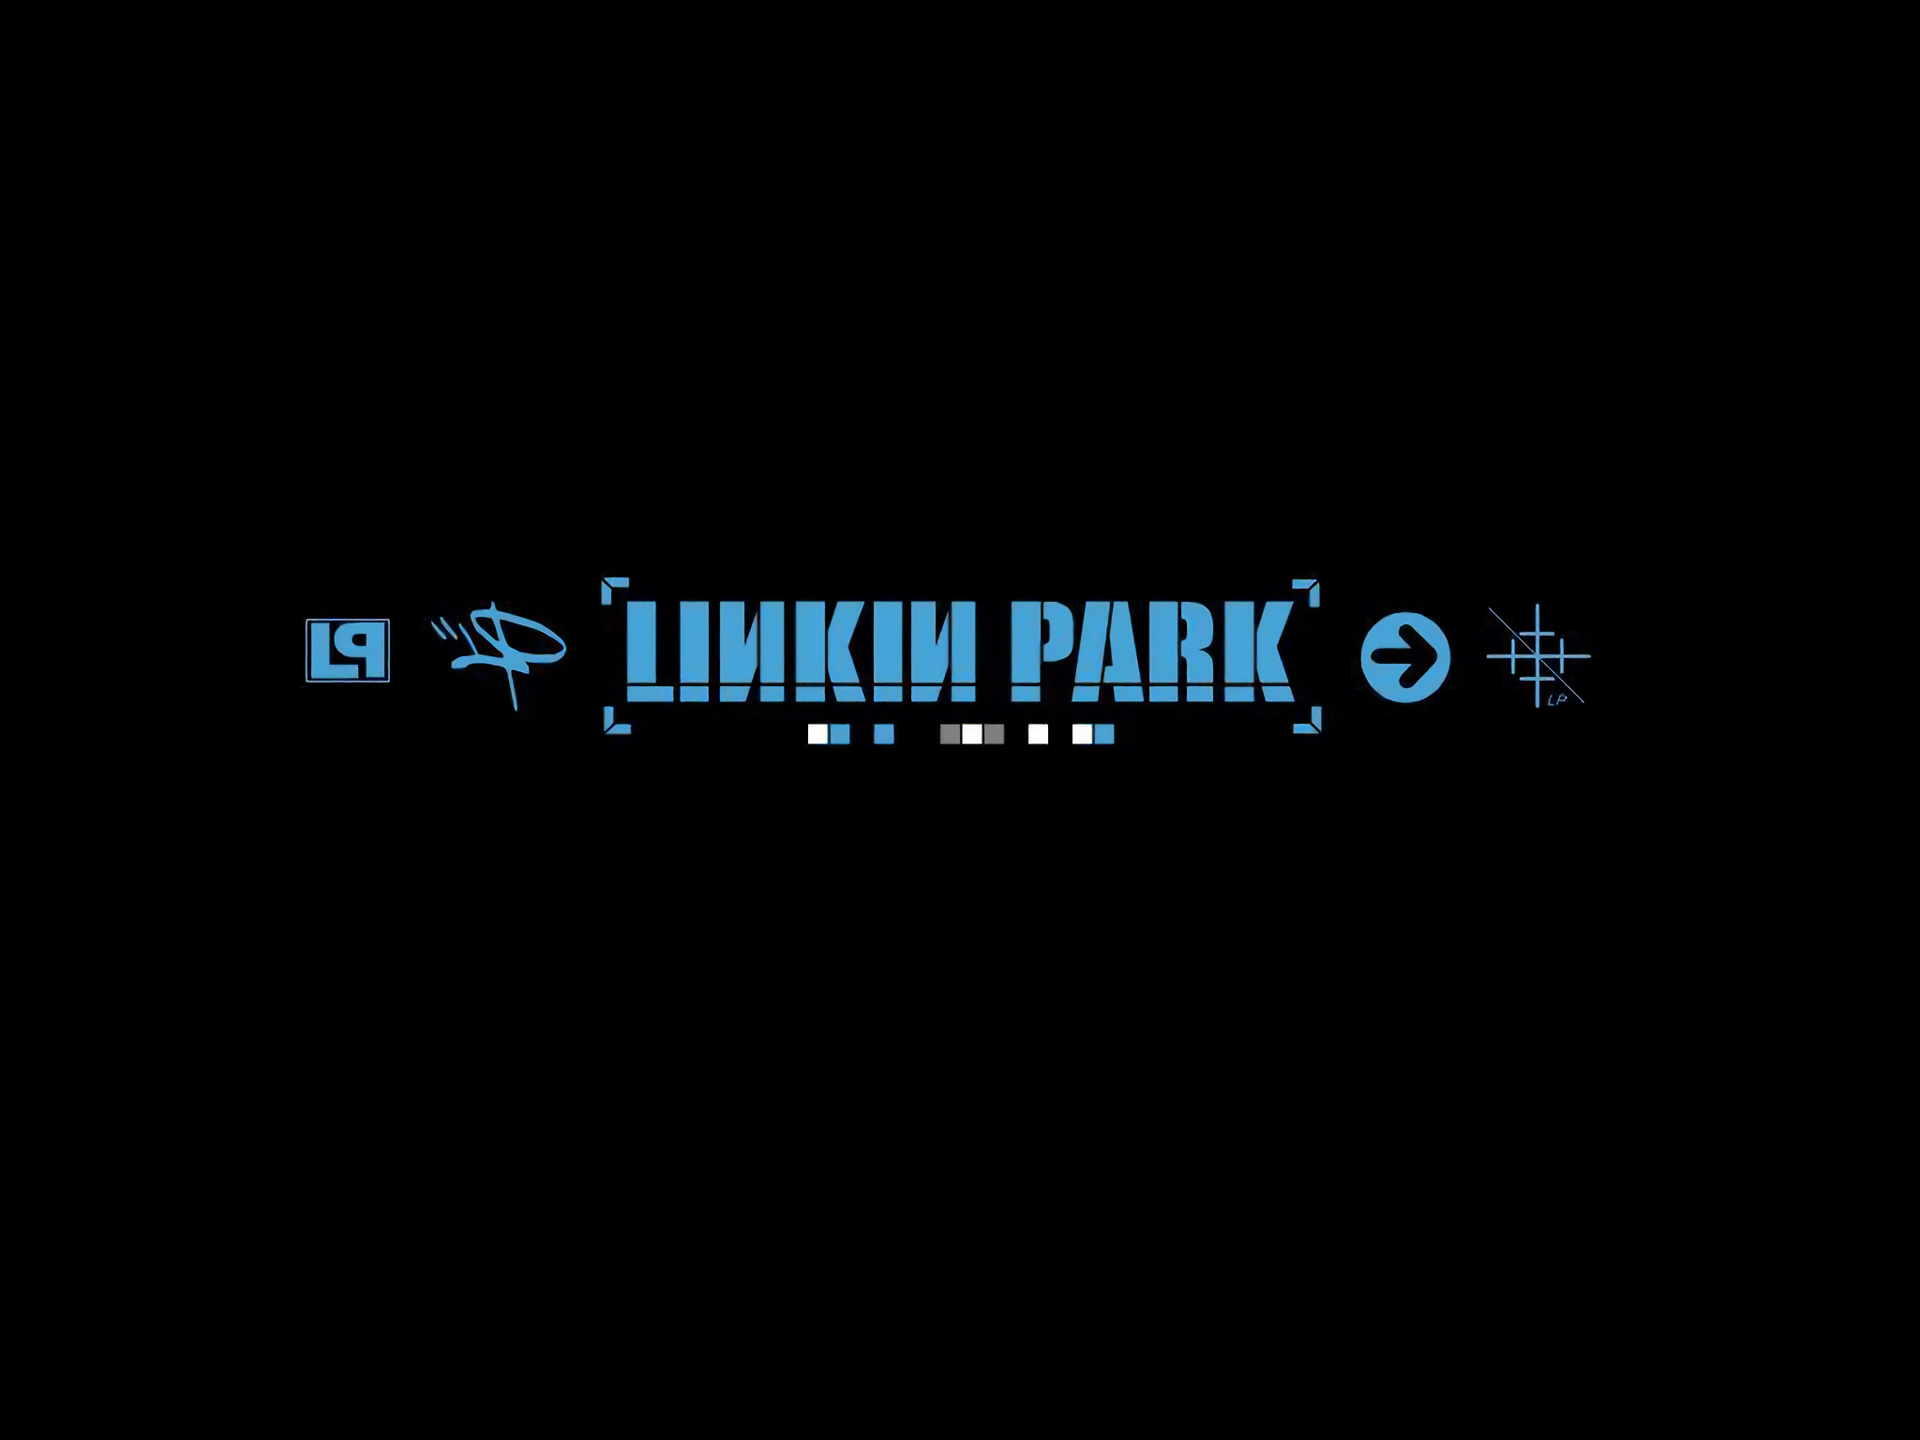 92 Linkin Park Wallpapers ideas | linkin park wallpaper, linkin park, park